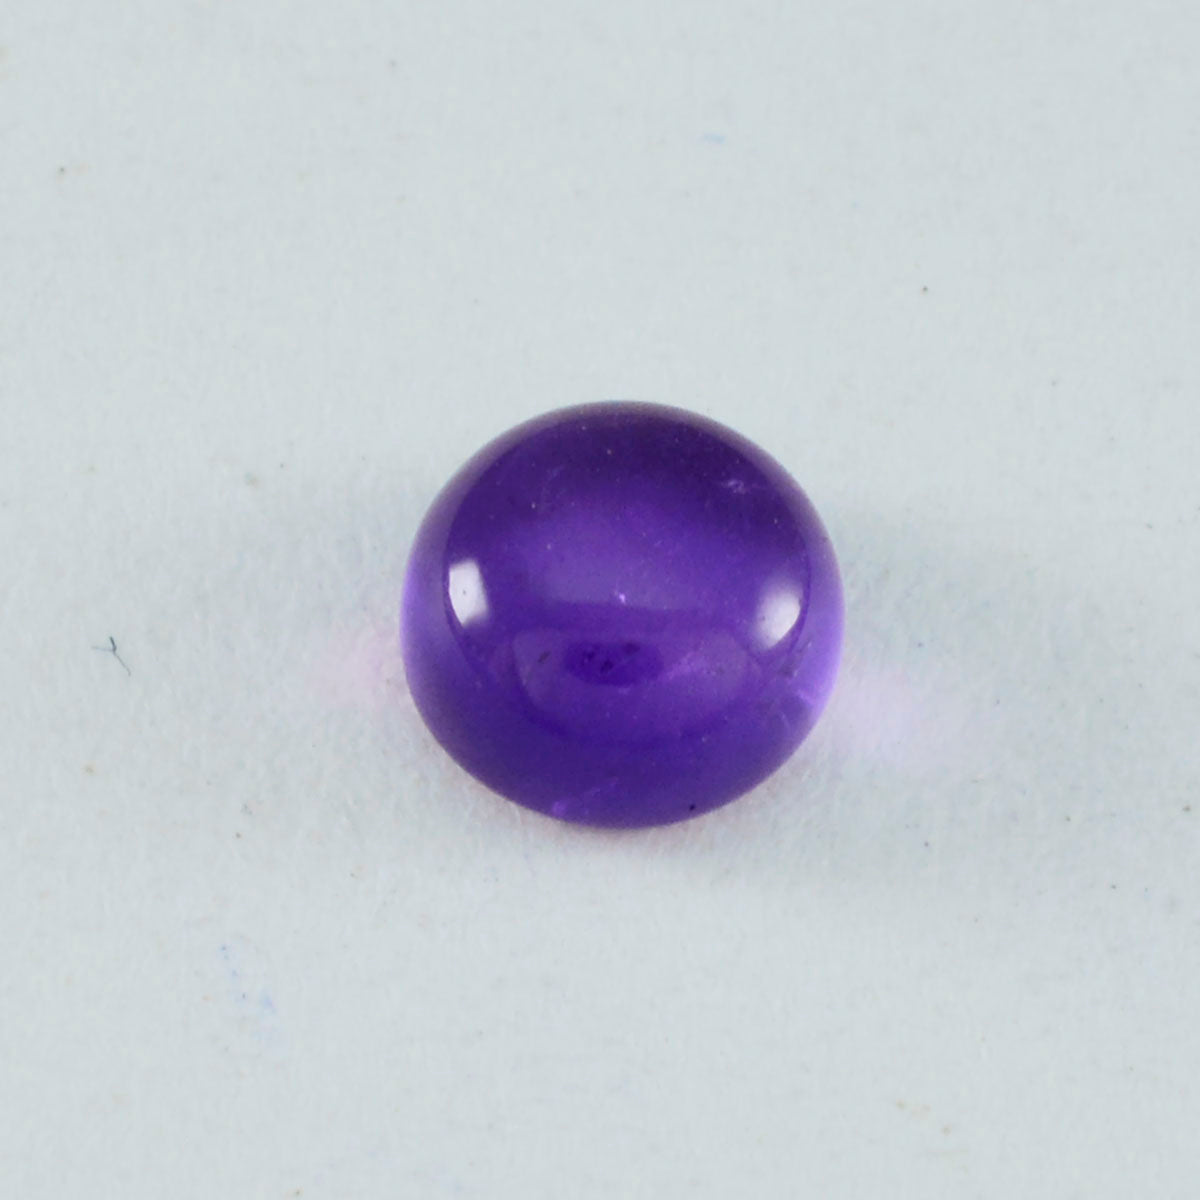 Riyogems 1PC Purple Amethyst Cabochon 11x11 mm Round Shape AAA Quality Gemstone